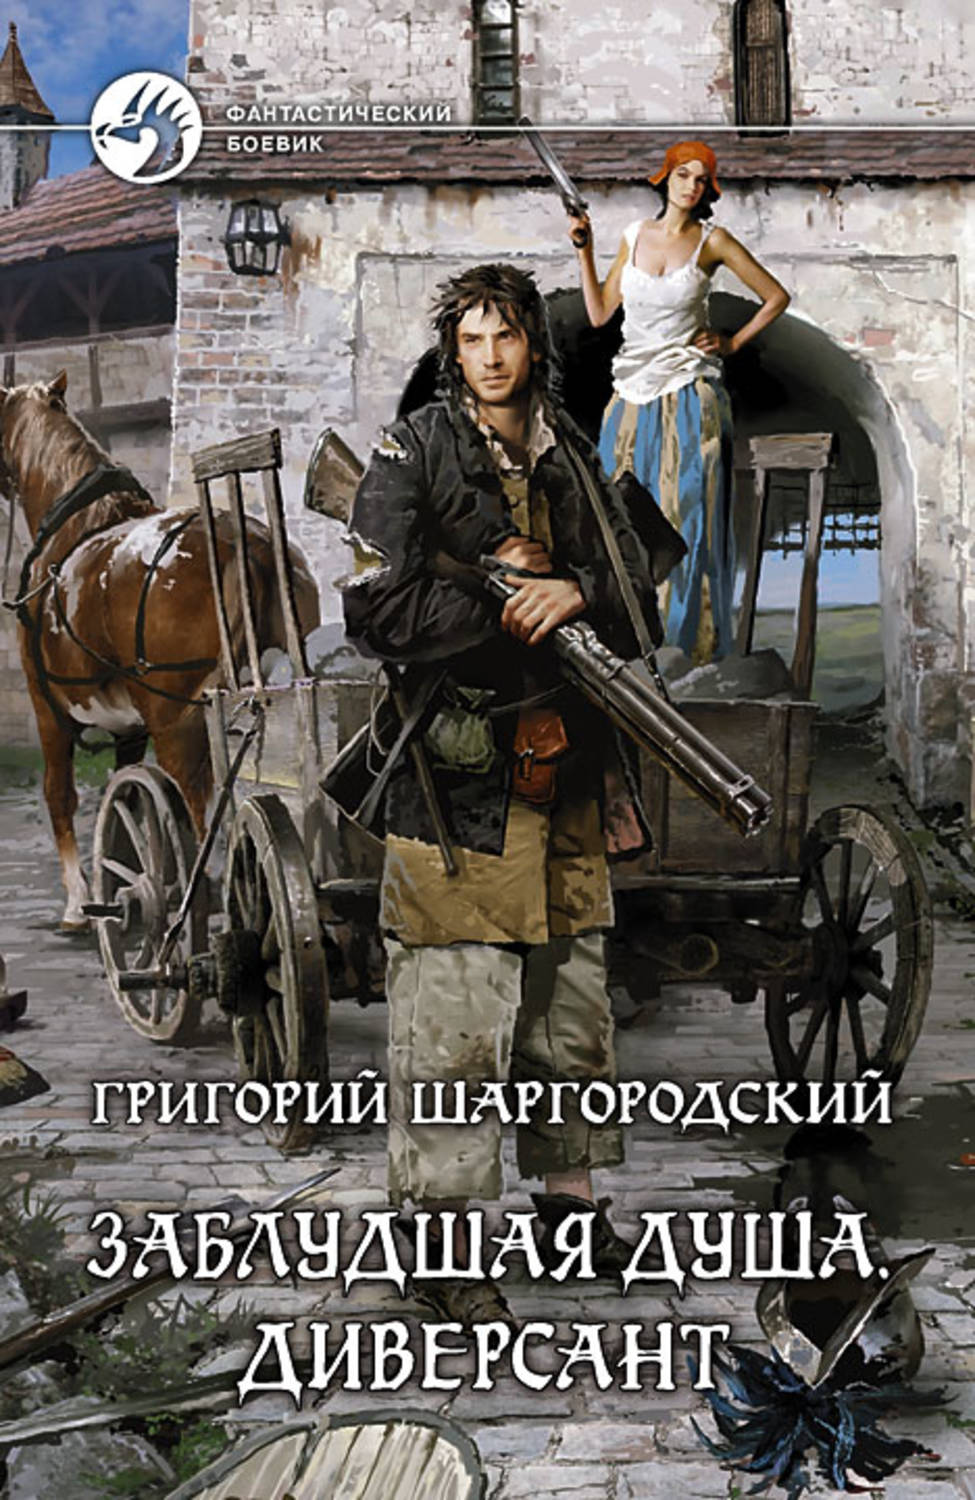 Григорий шаргородский все книги скачать бесплатно